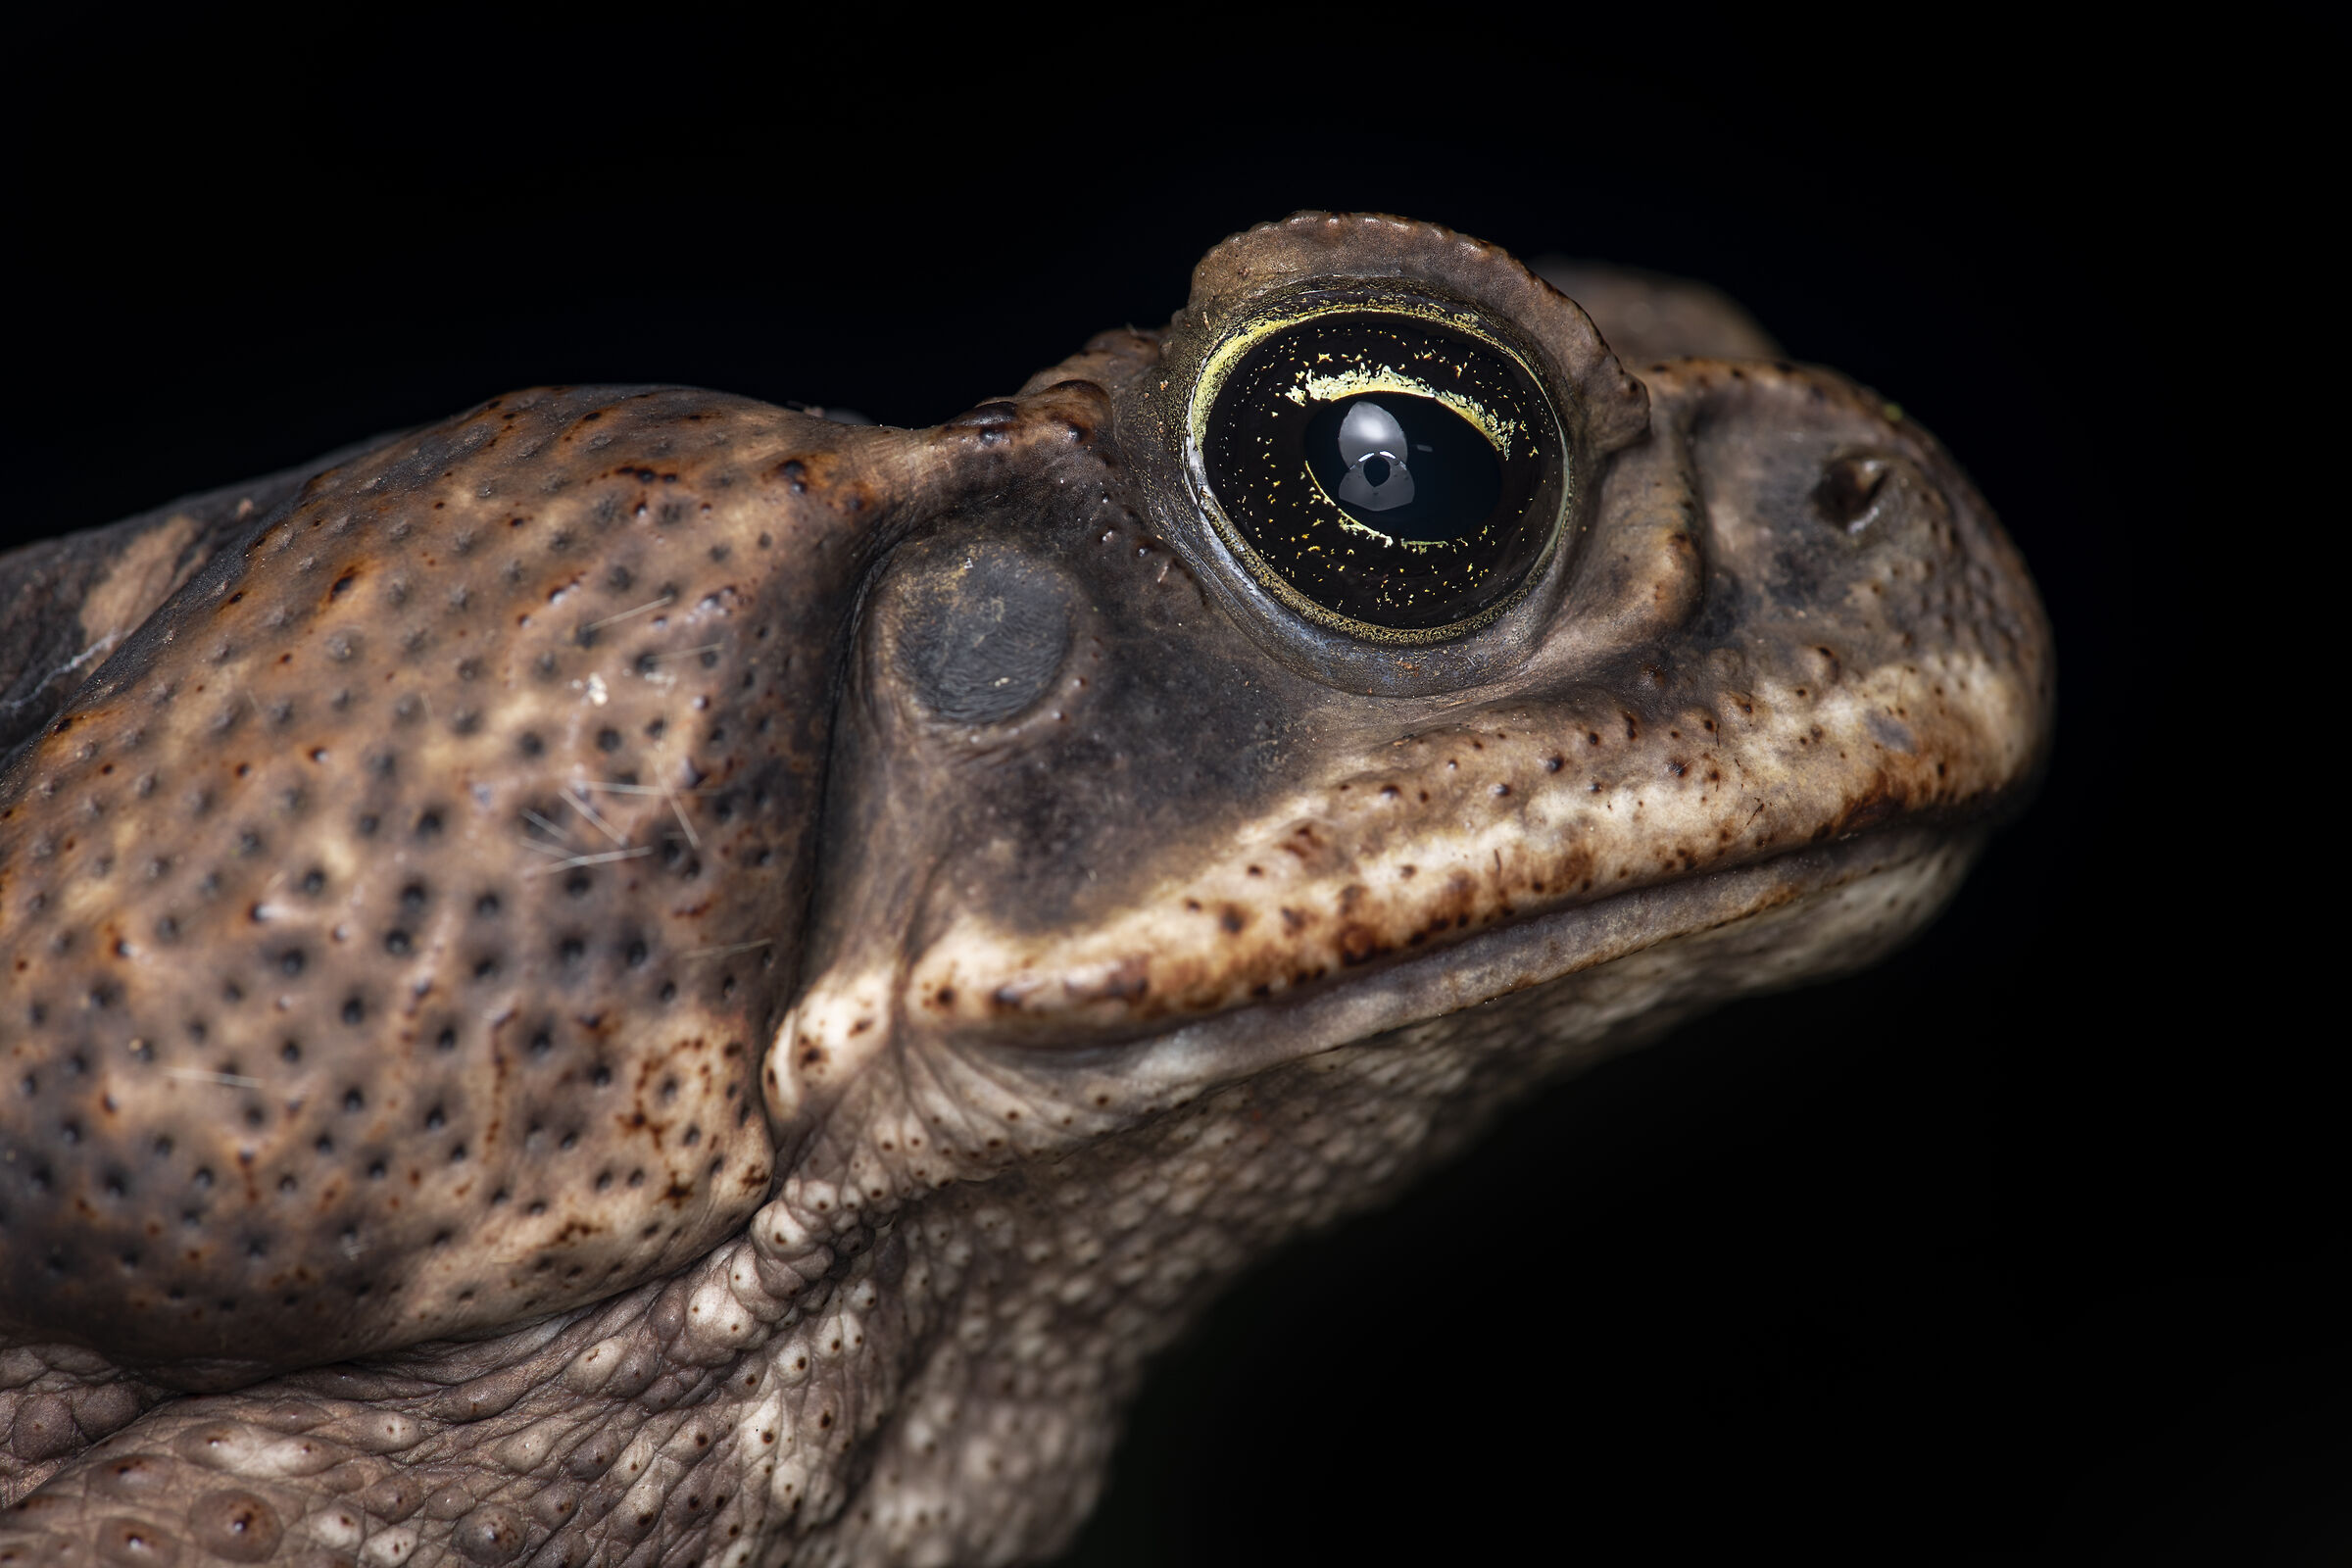 Cane Toad Profile...